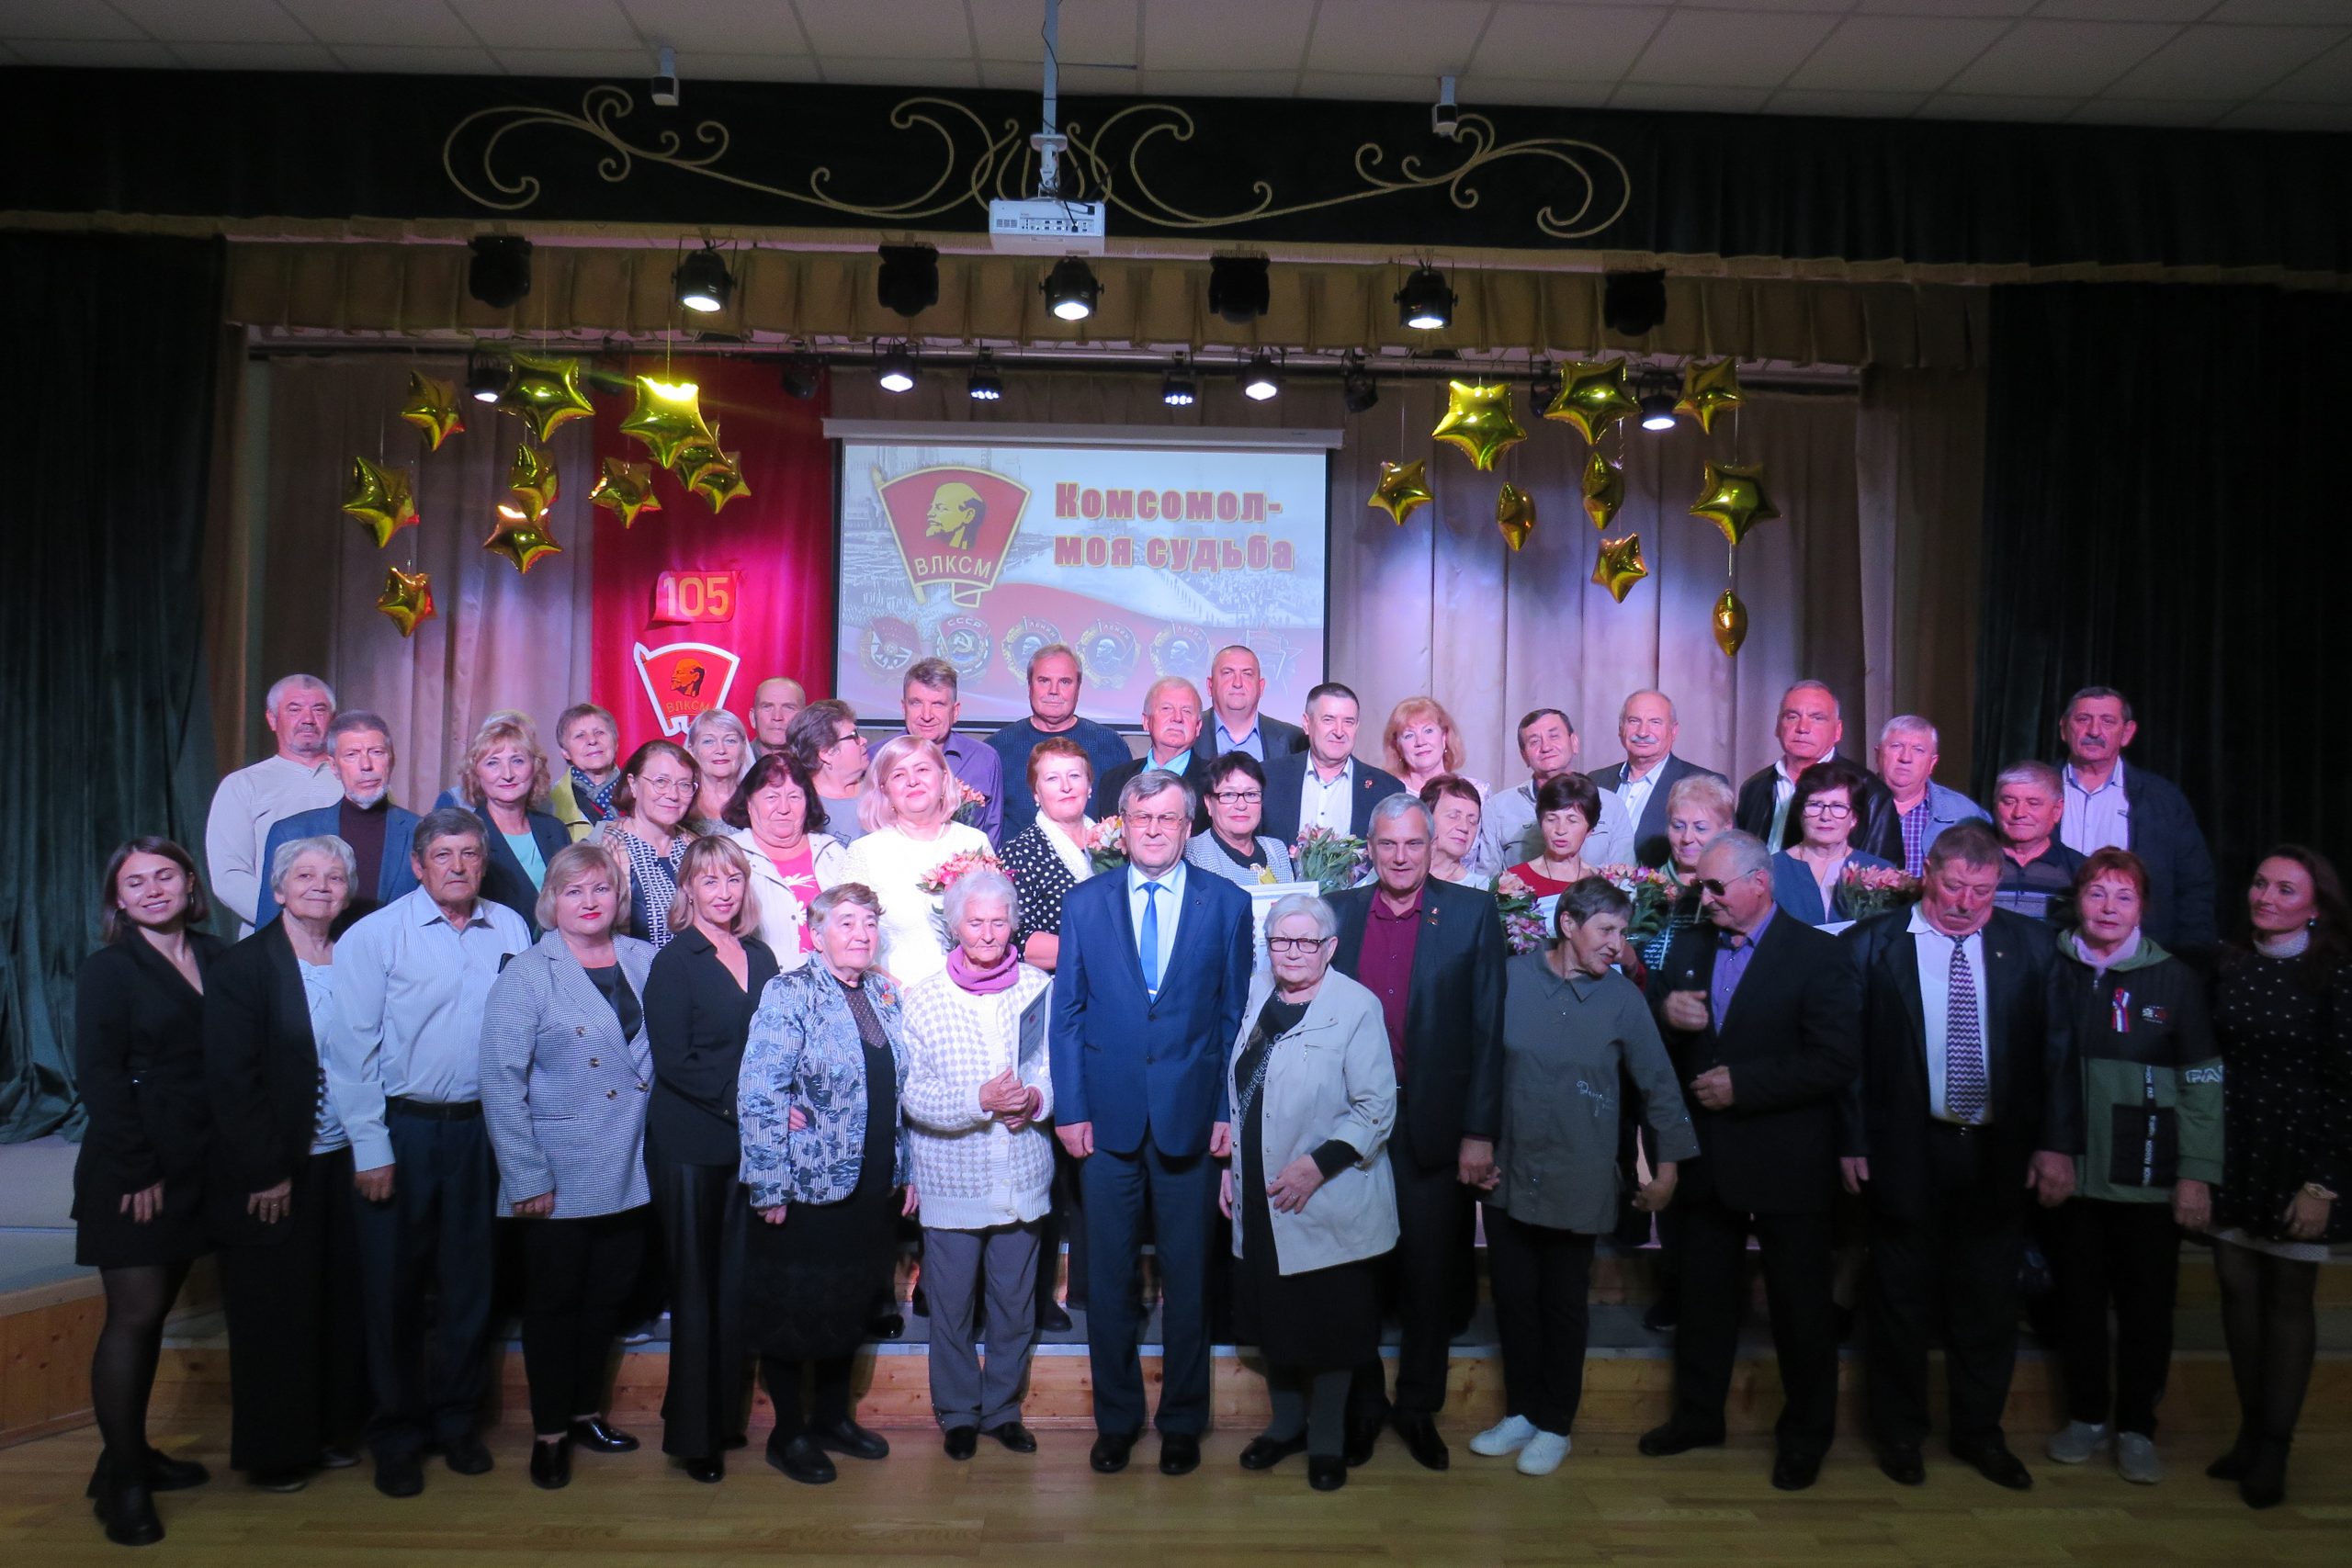 29 октября Всесоюзному коммунистическому союзу молодежи исполнилось 105 лет